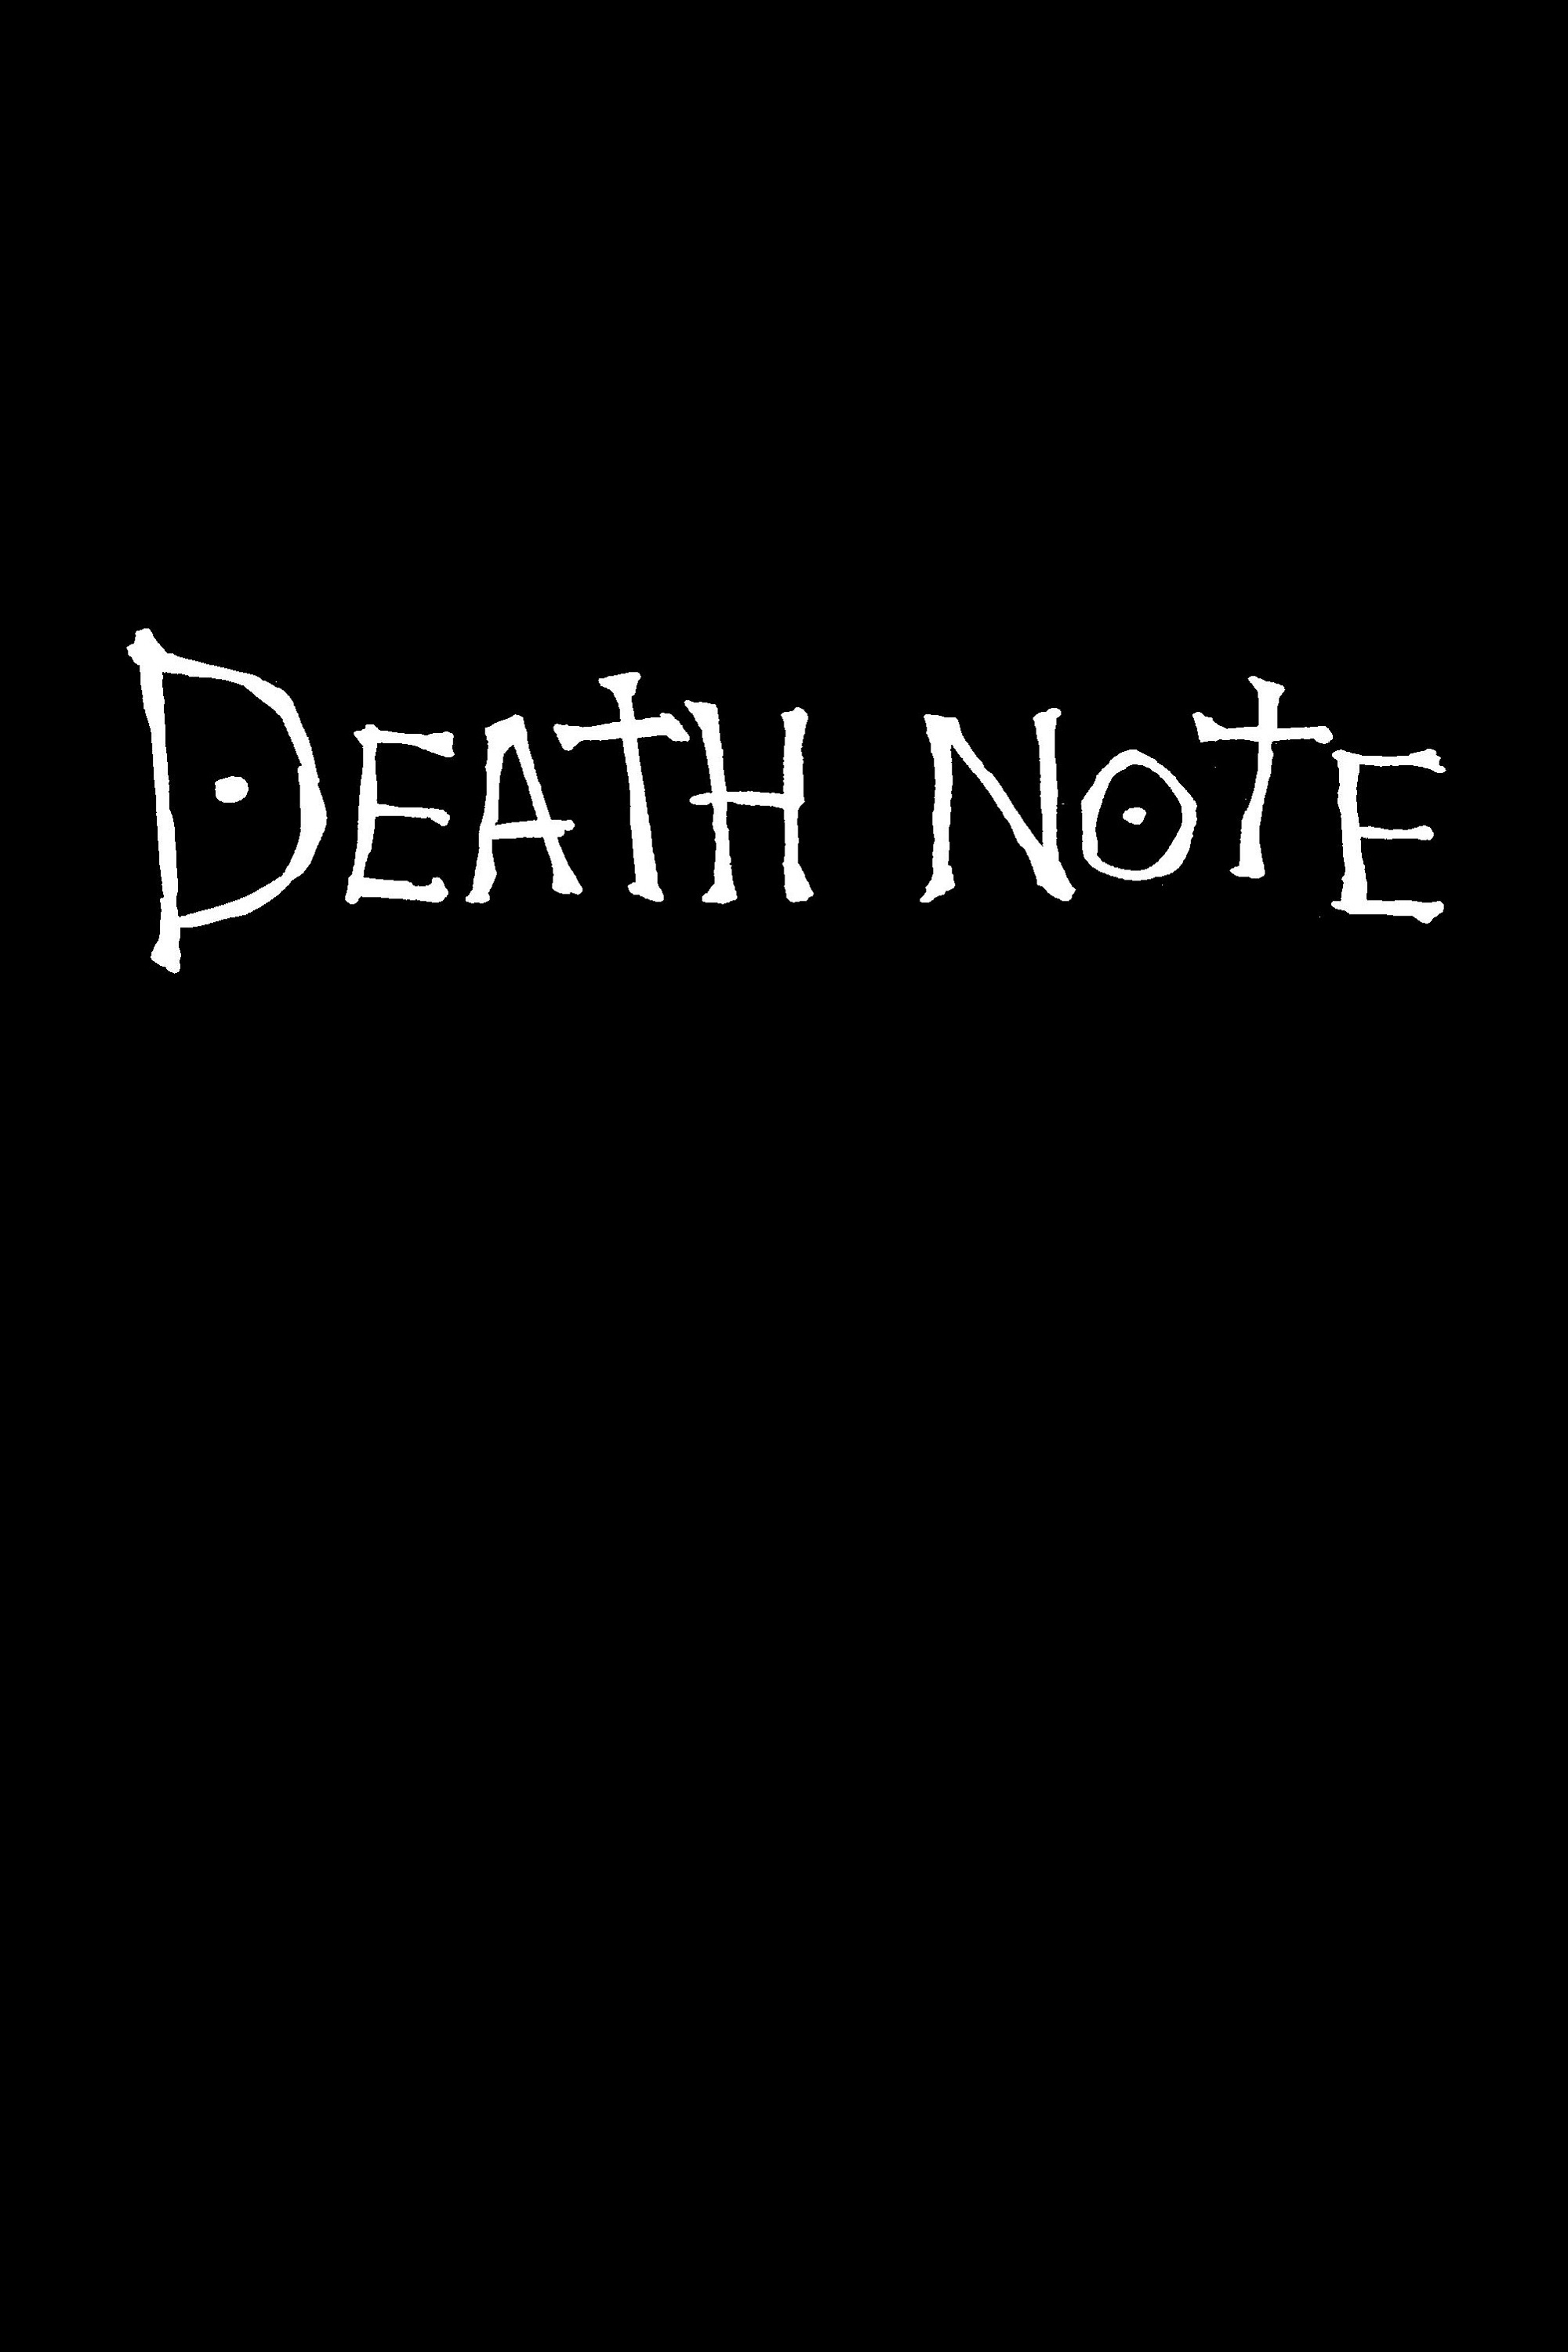 ¿Muerto o no muerto? - Página 2 Death-note